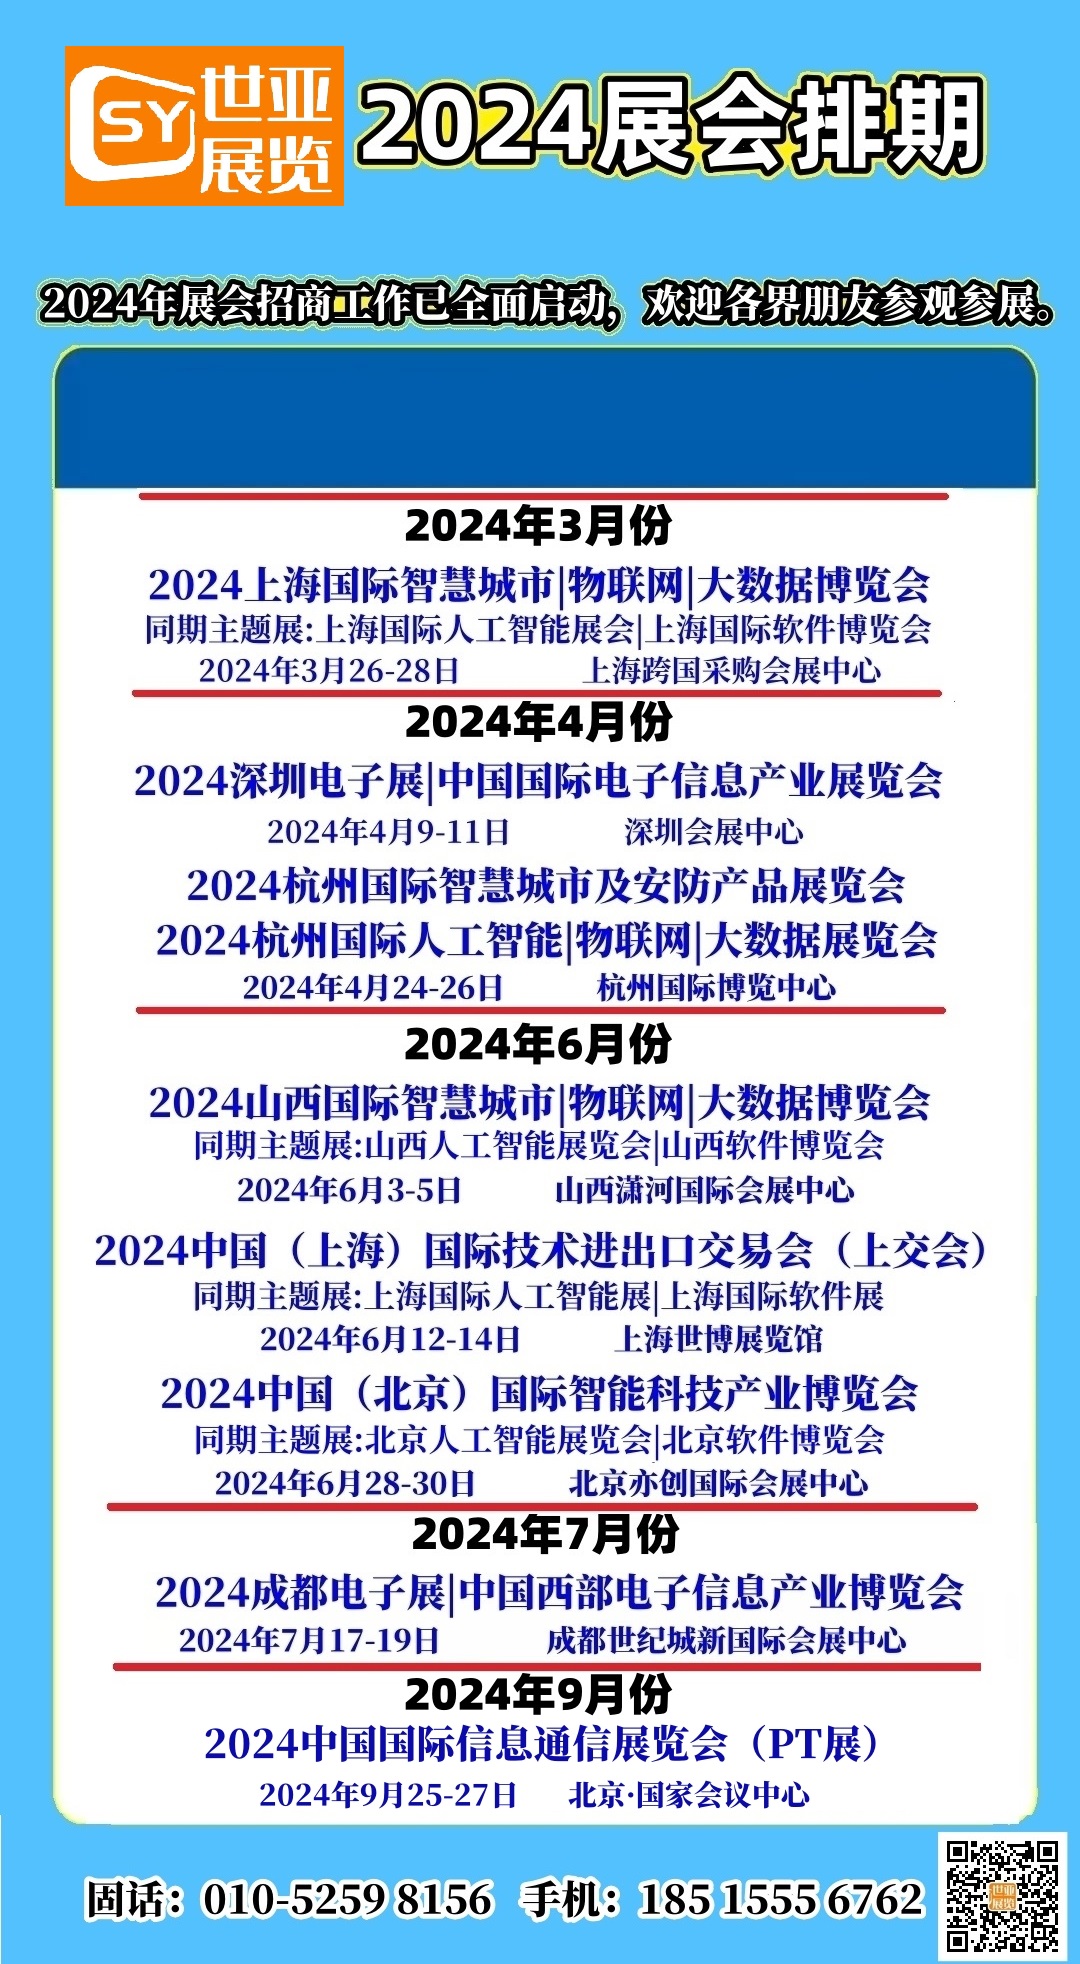 2024抢先了解、最新出炉|2024年1-2月北京展会排期表 - 哔哩哔哩